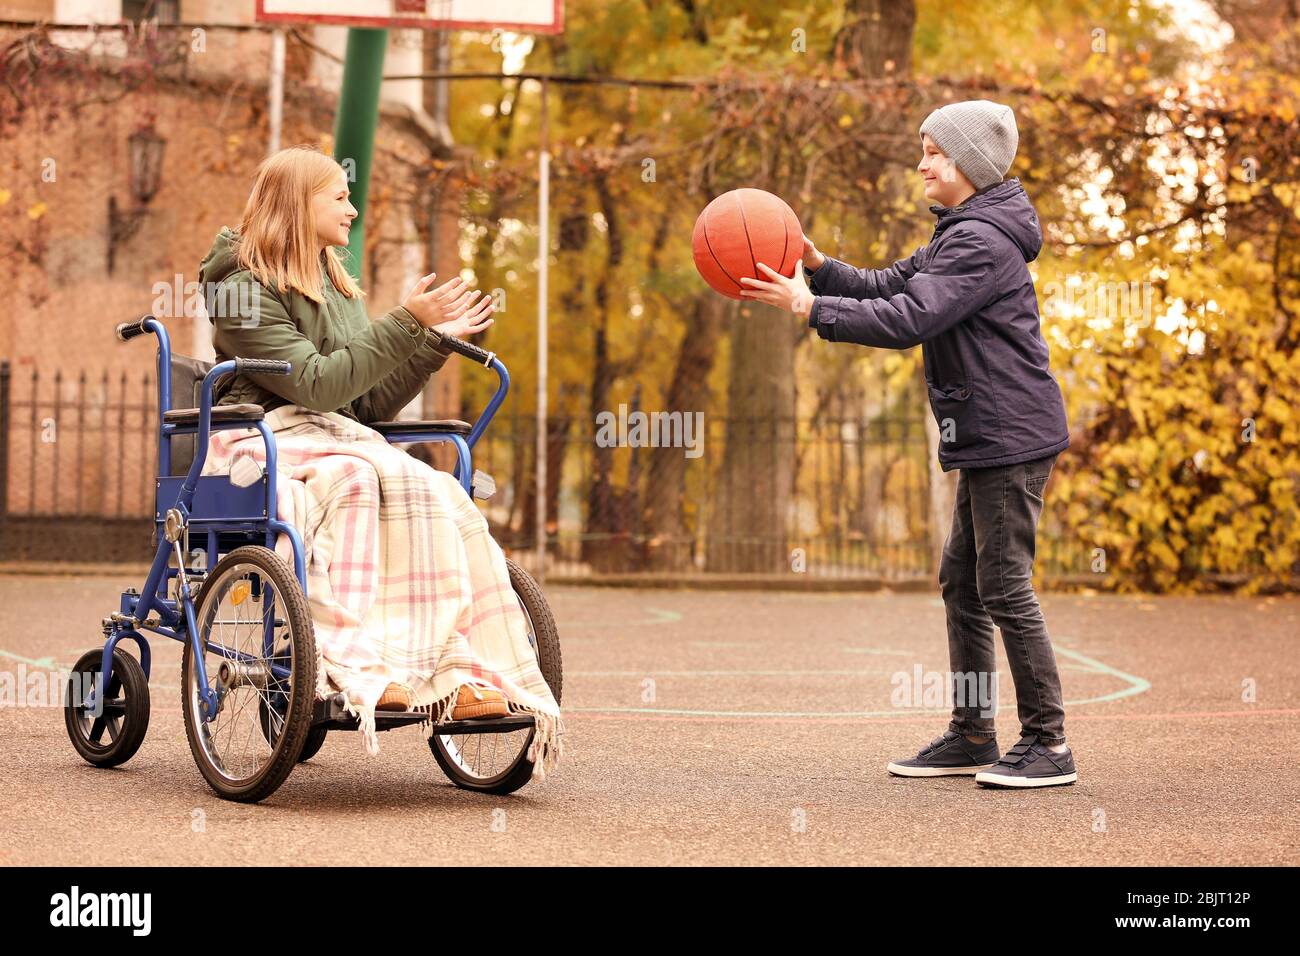 Bambina in sedia a rotelle e ragazzo che gioca con la palla all'aperto Foto  stock - Alamy